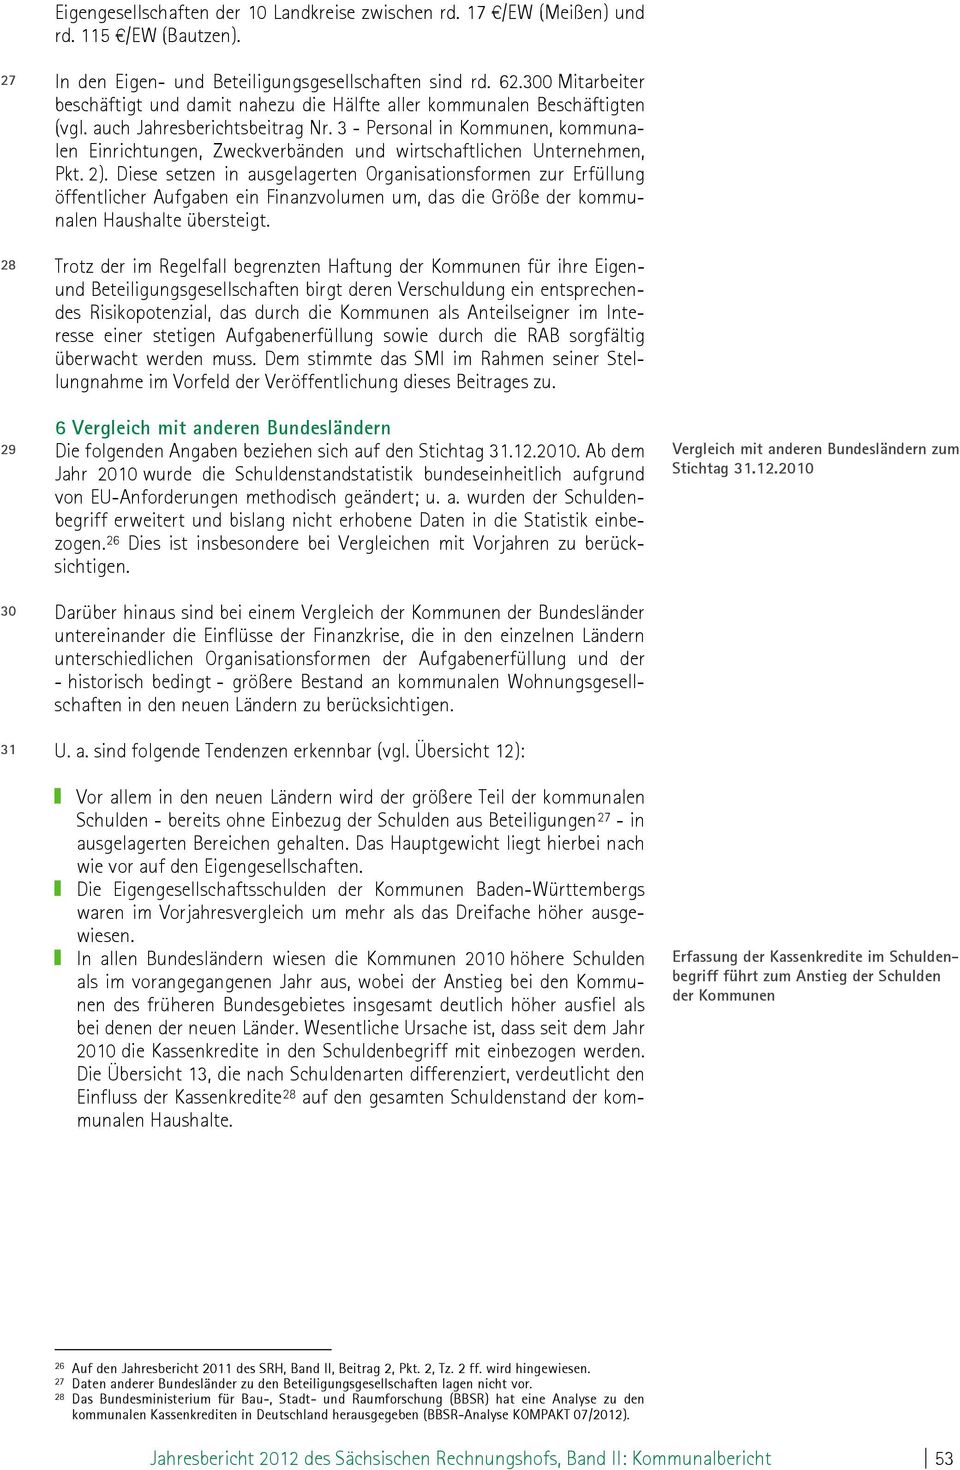 3 - Personal in Kommunen, kommunalen Einrichtungen, Zweckverbänden und wirtschaftlichen Unternehmen, Pkt. 2).